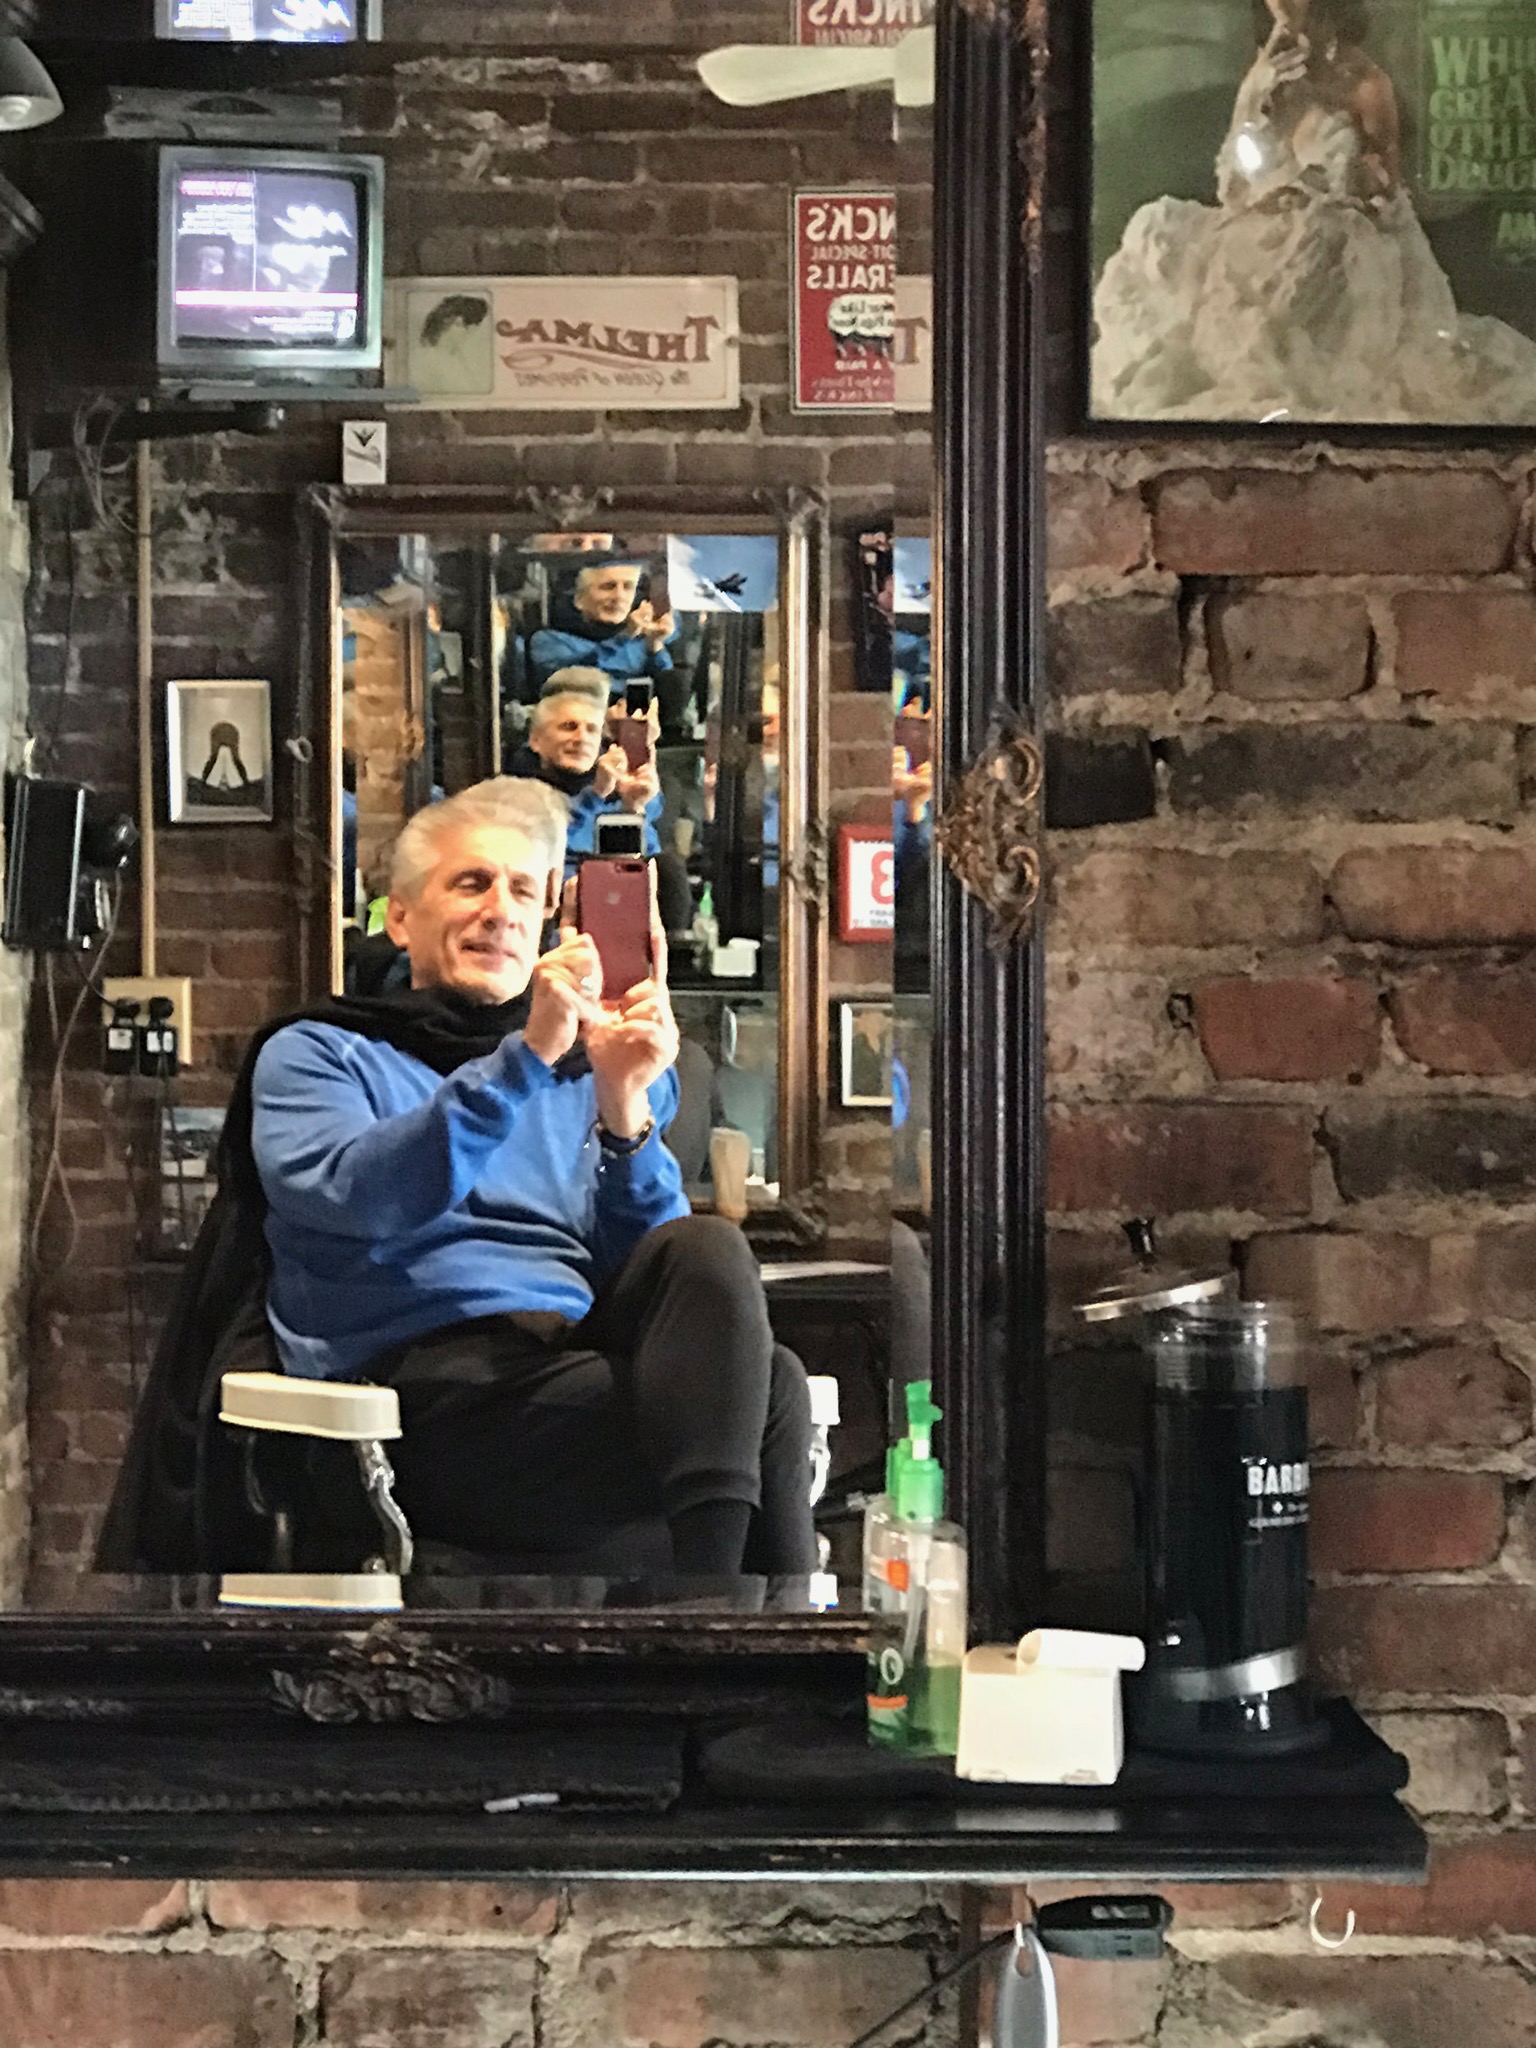 My selfie in barber chair IMG_3434.jpg*.jpg